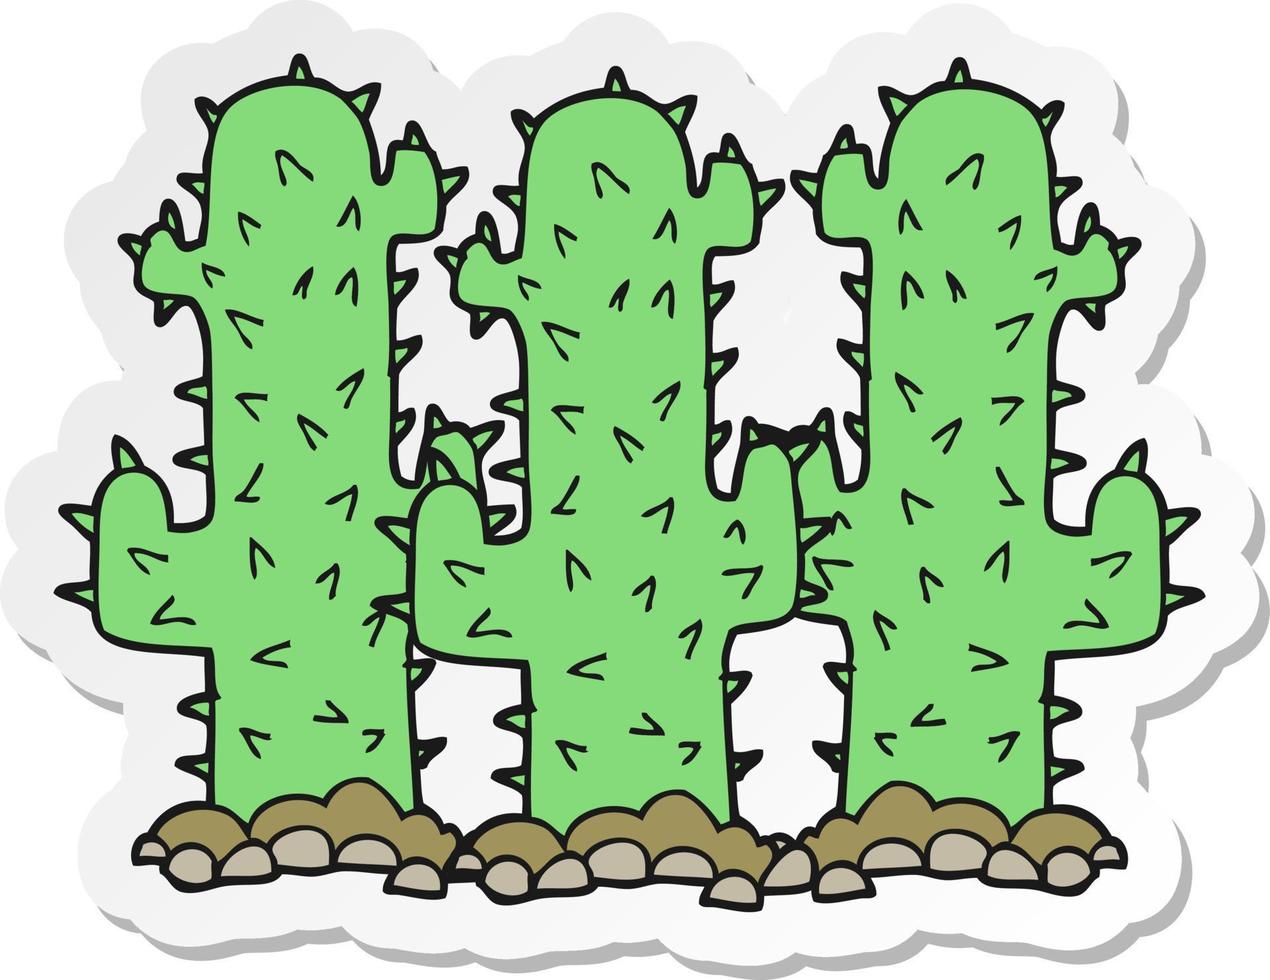 autocollant d'un cactus de dessin animé vecteur